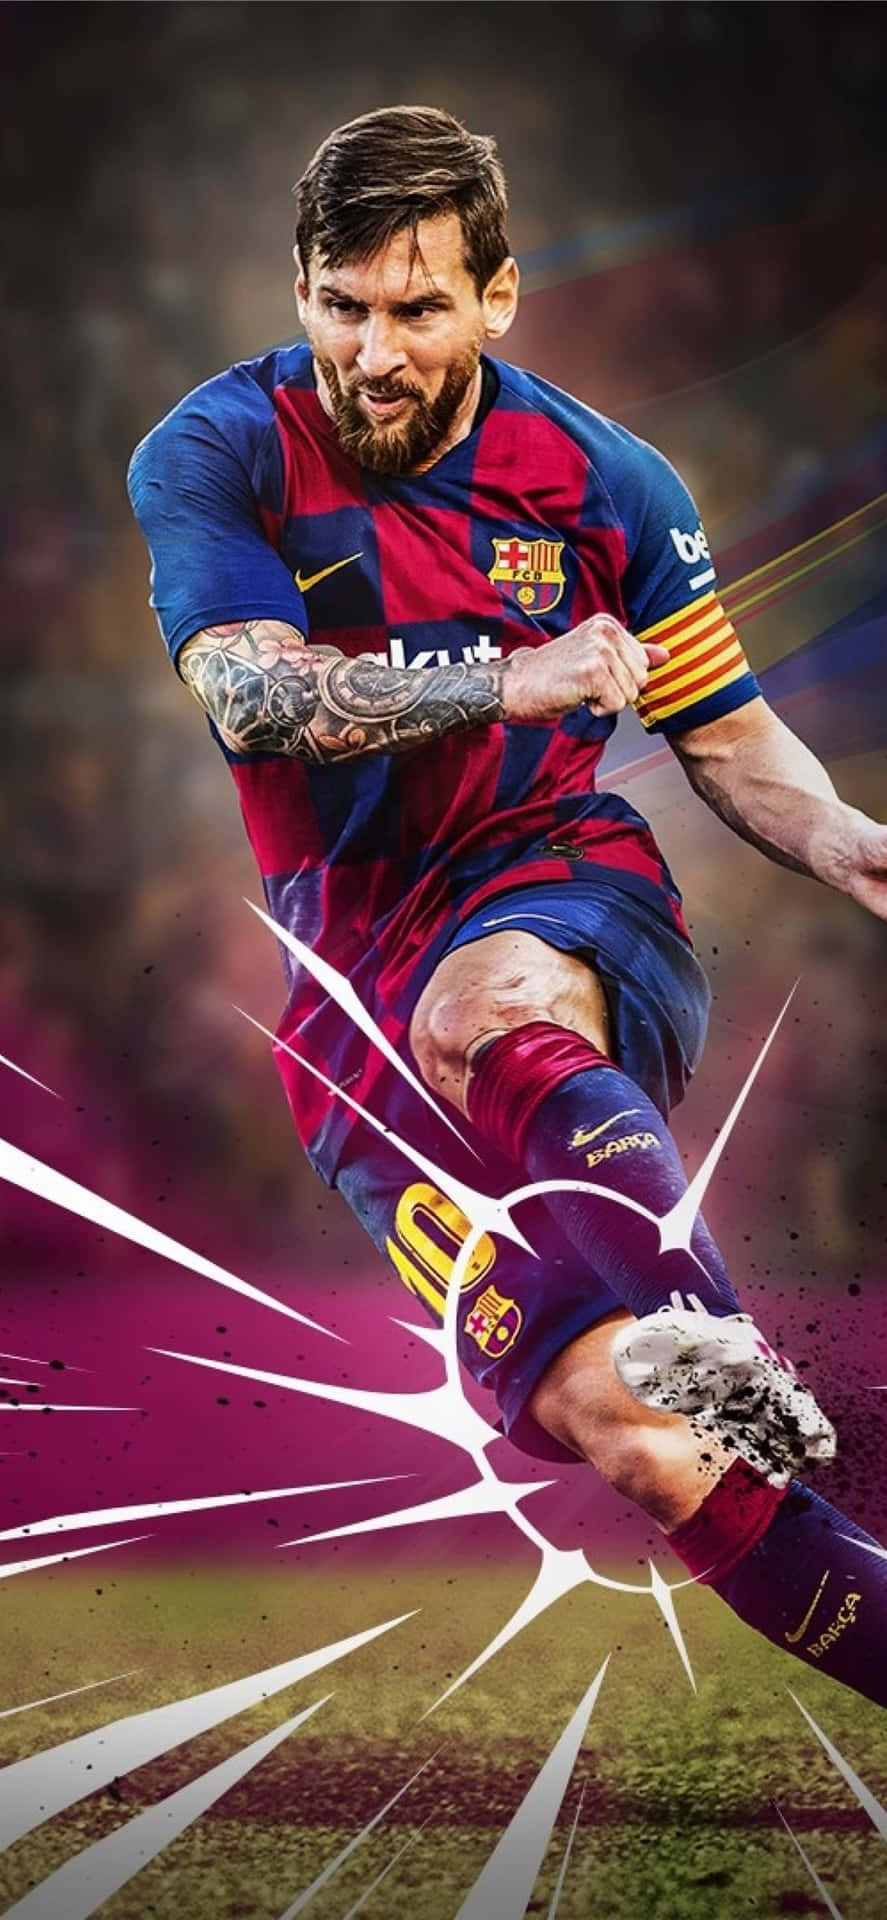 Fondode Pantalla De Fútbol Para Iphone Con Edición De Fan De Lionel Messi Y Fotografía. Fondo de pantalla